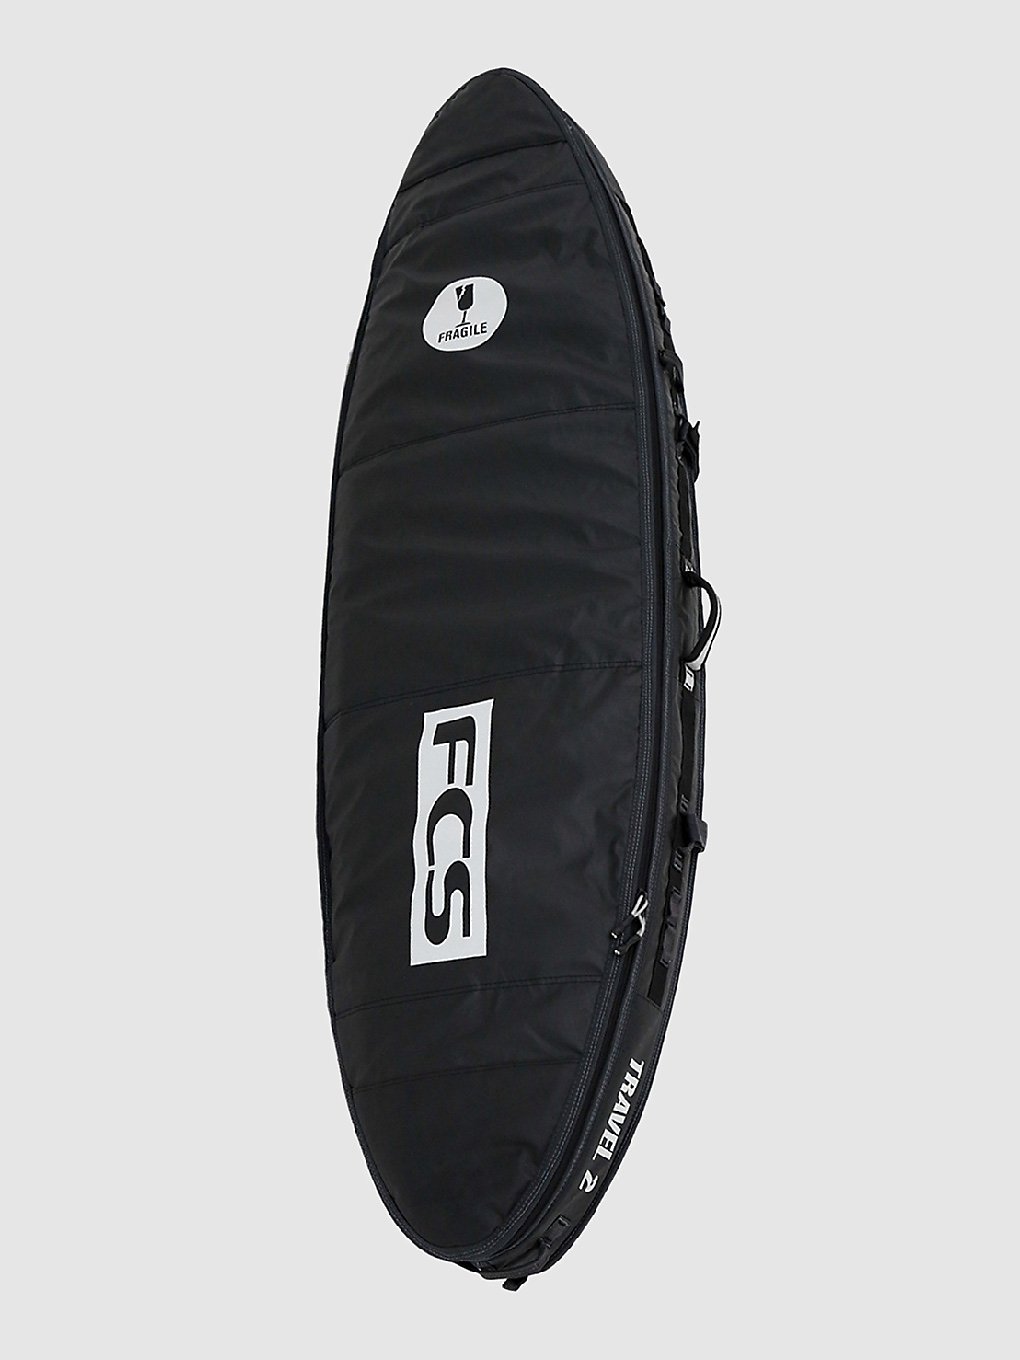 FCS Travel 2 All Purpose 6'7 Surfboard-Tasche grey kaufen